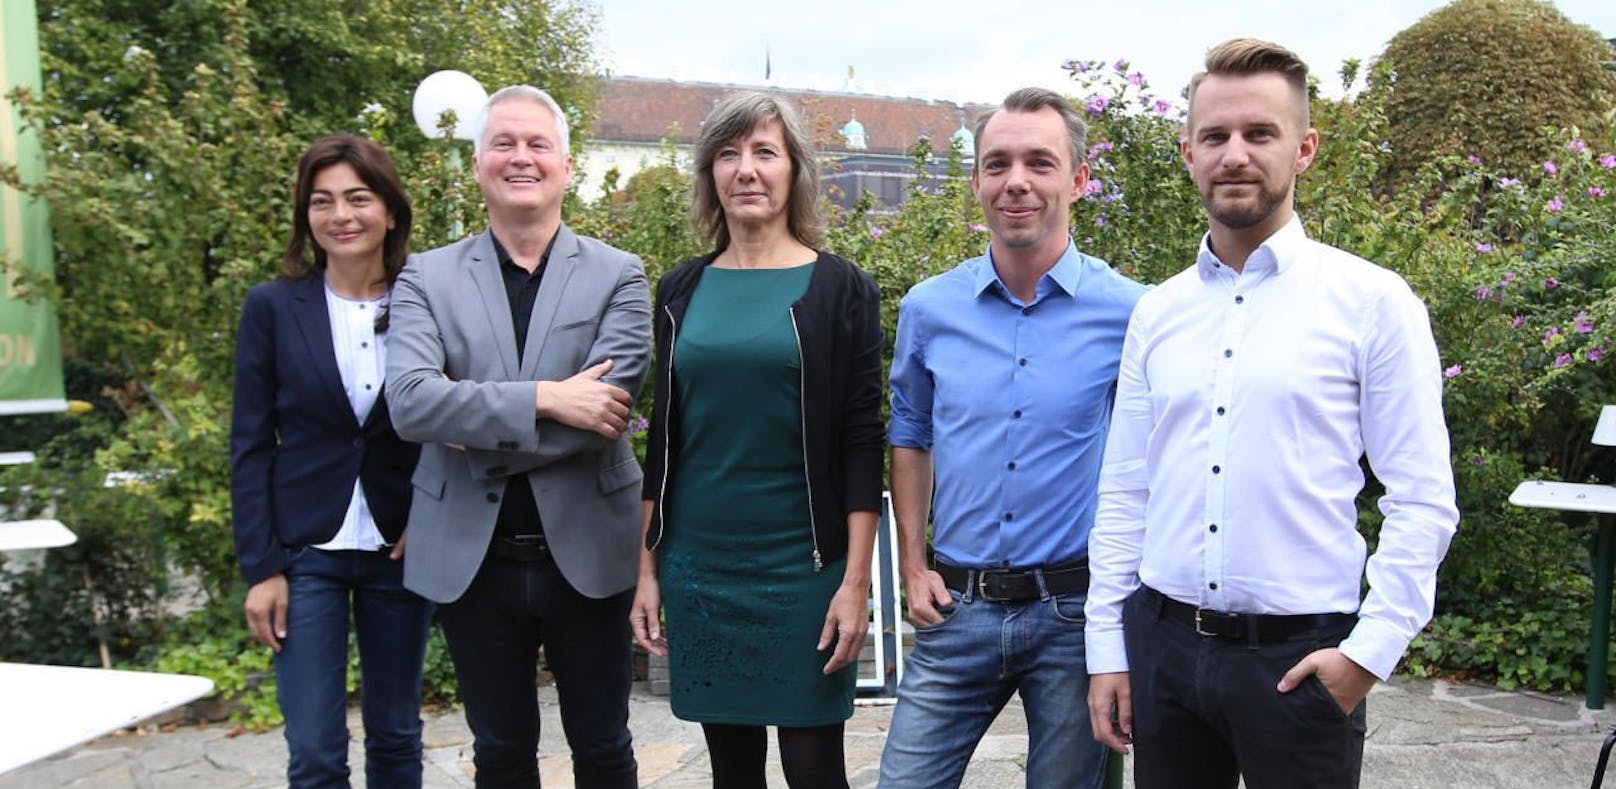 Die fünf Kandidaten sind Marihan Abensperg-Traun, David Ellensohn, Birgit Hebein, Benjamin Kaan und Peter Kraus (v.li.).